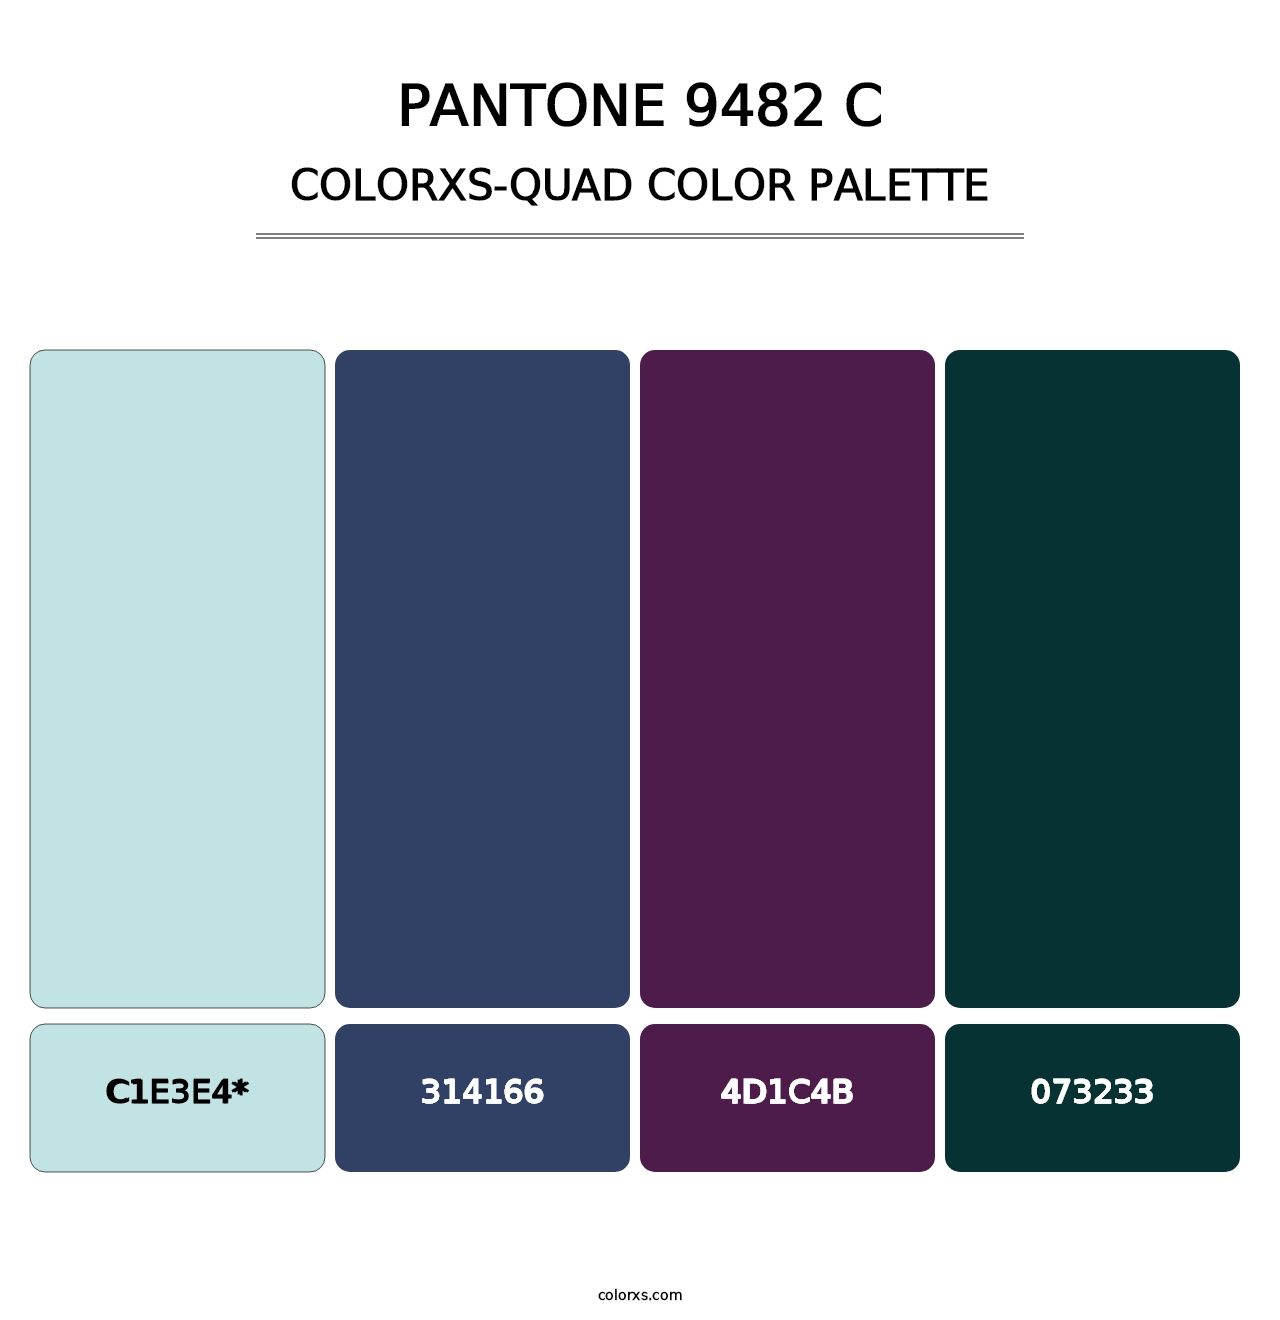 PANTONE 9482 C - Colorxs Quad Palette